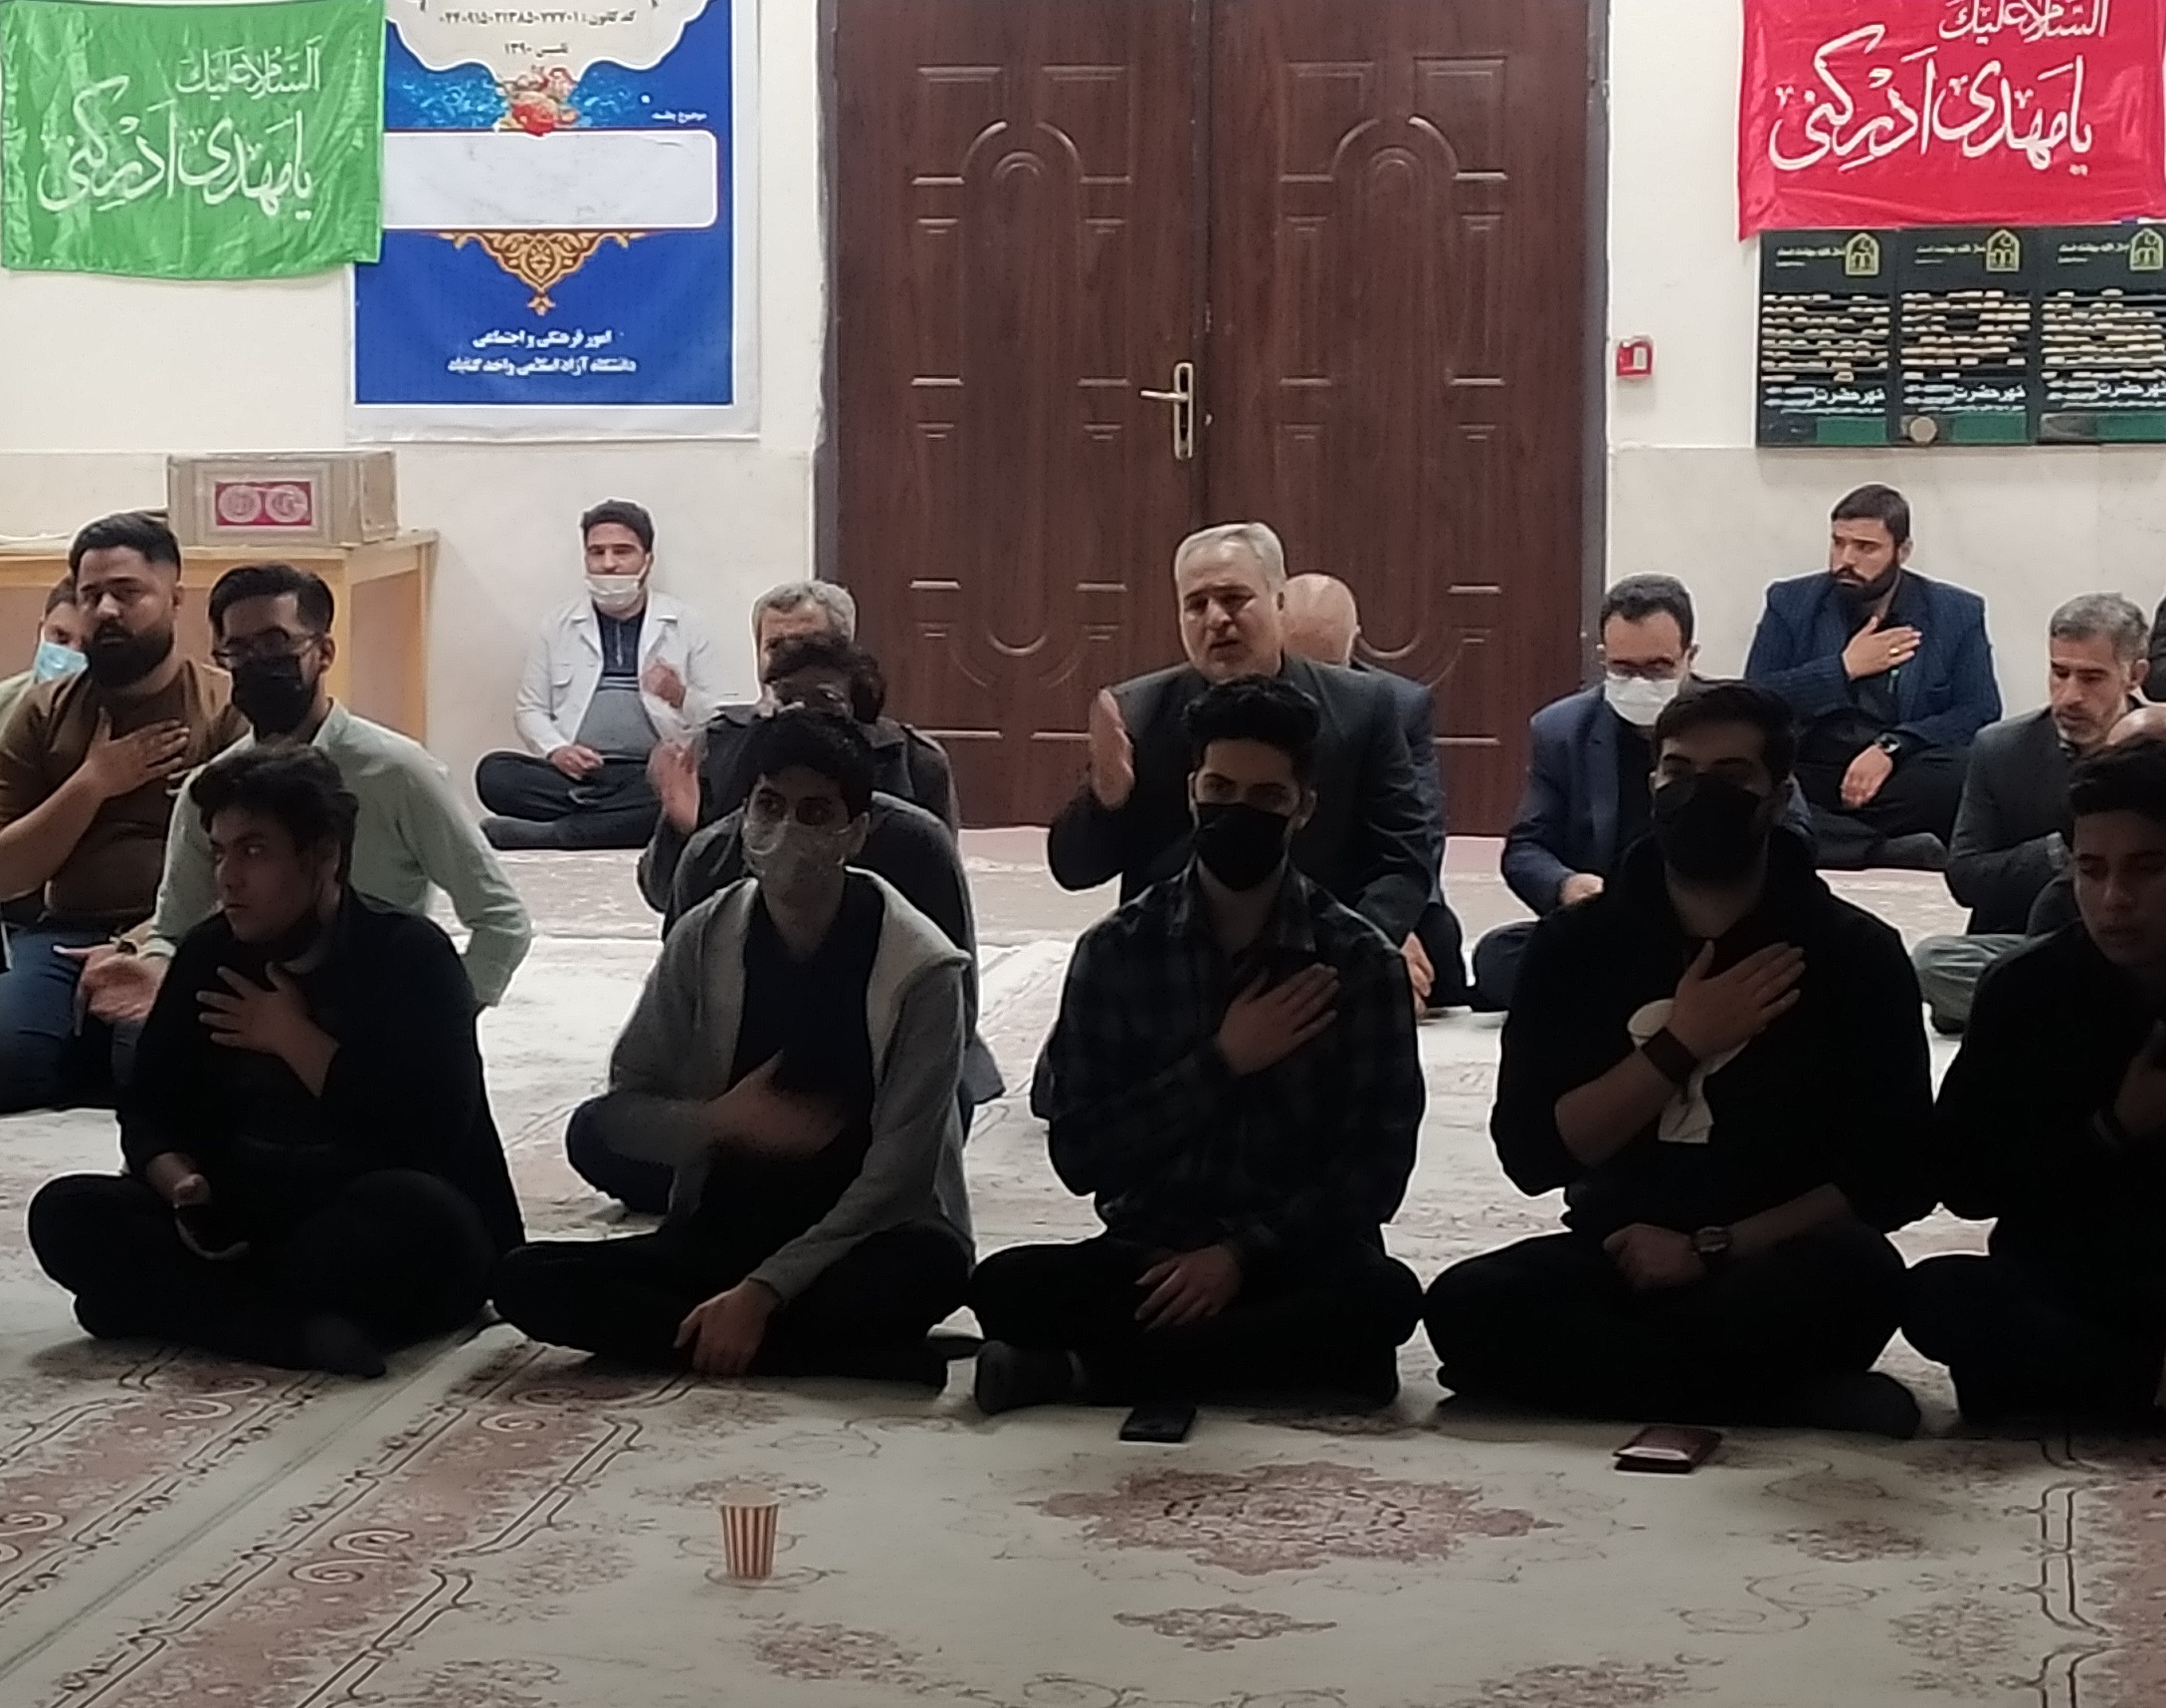 رستاخیز شب نوزدهم در واحدهای دانشگاه آزاد اسلامی